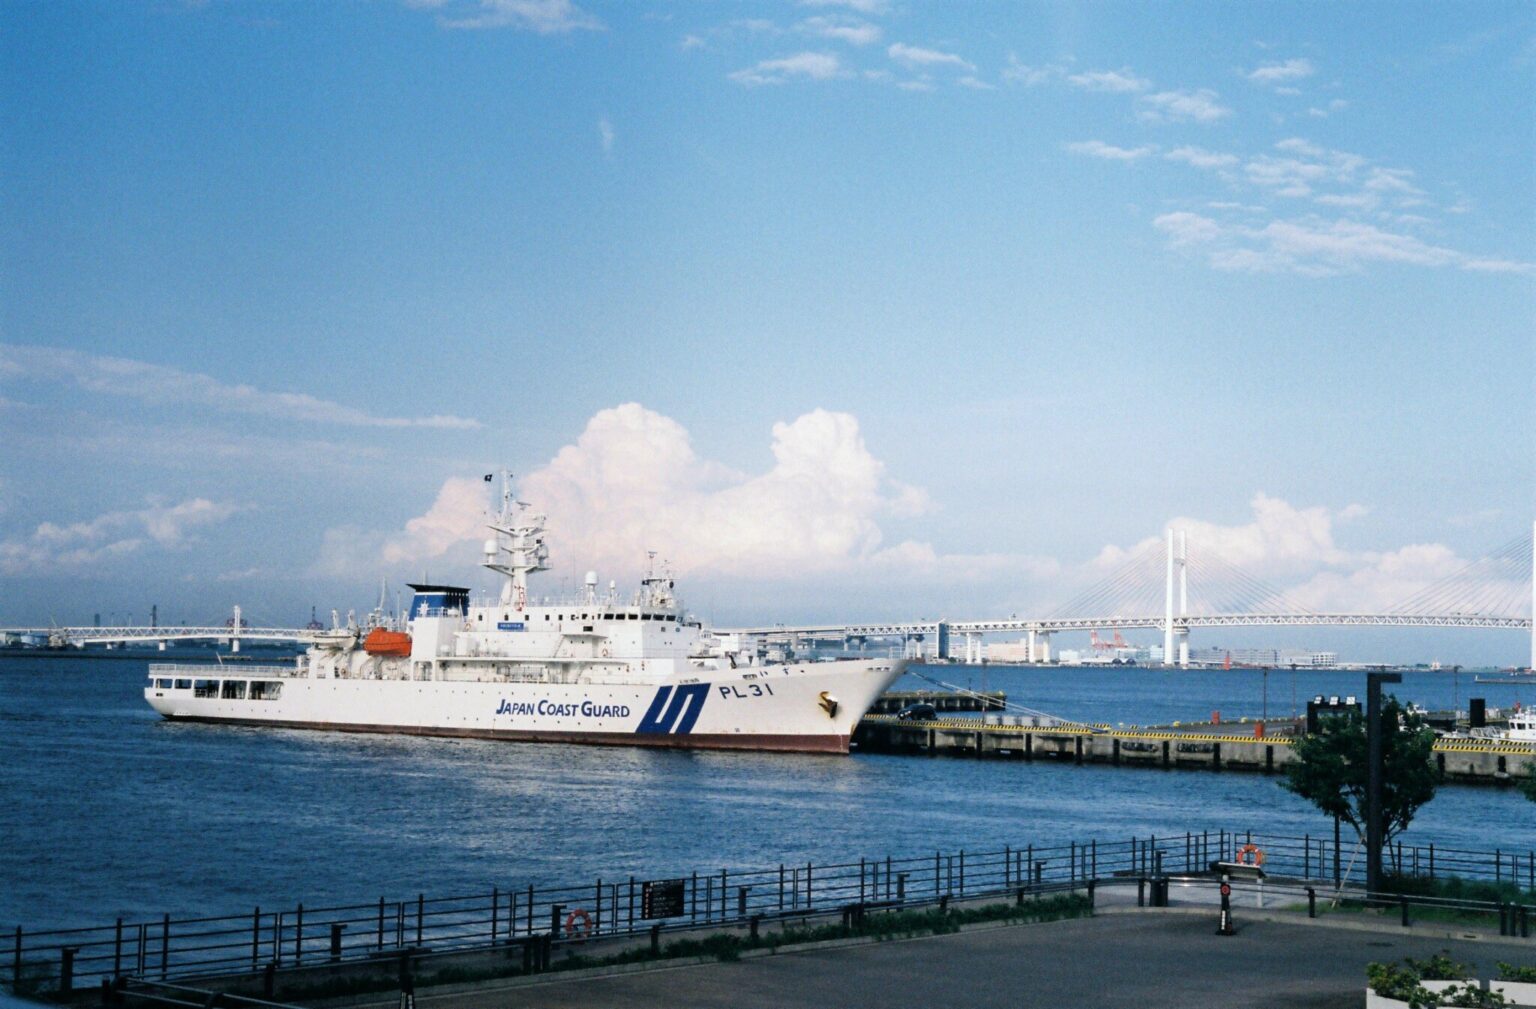 海を見れば大体船が停泊している横浜。海上保安庁の船です。夏雲似合うね。